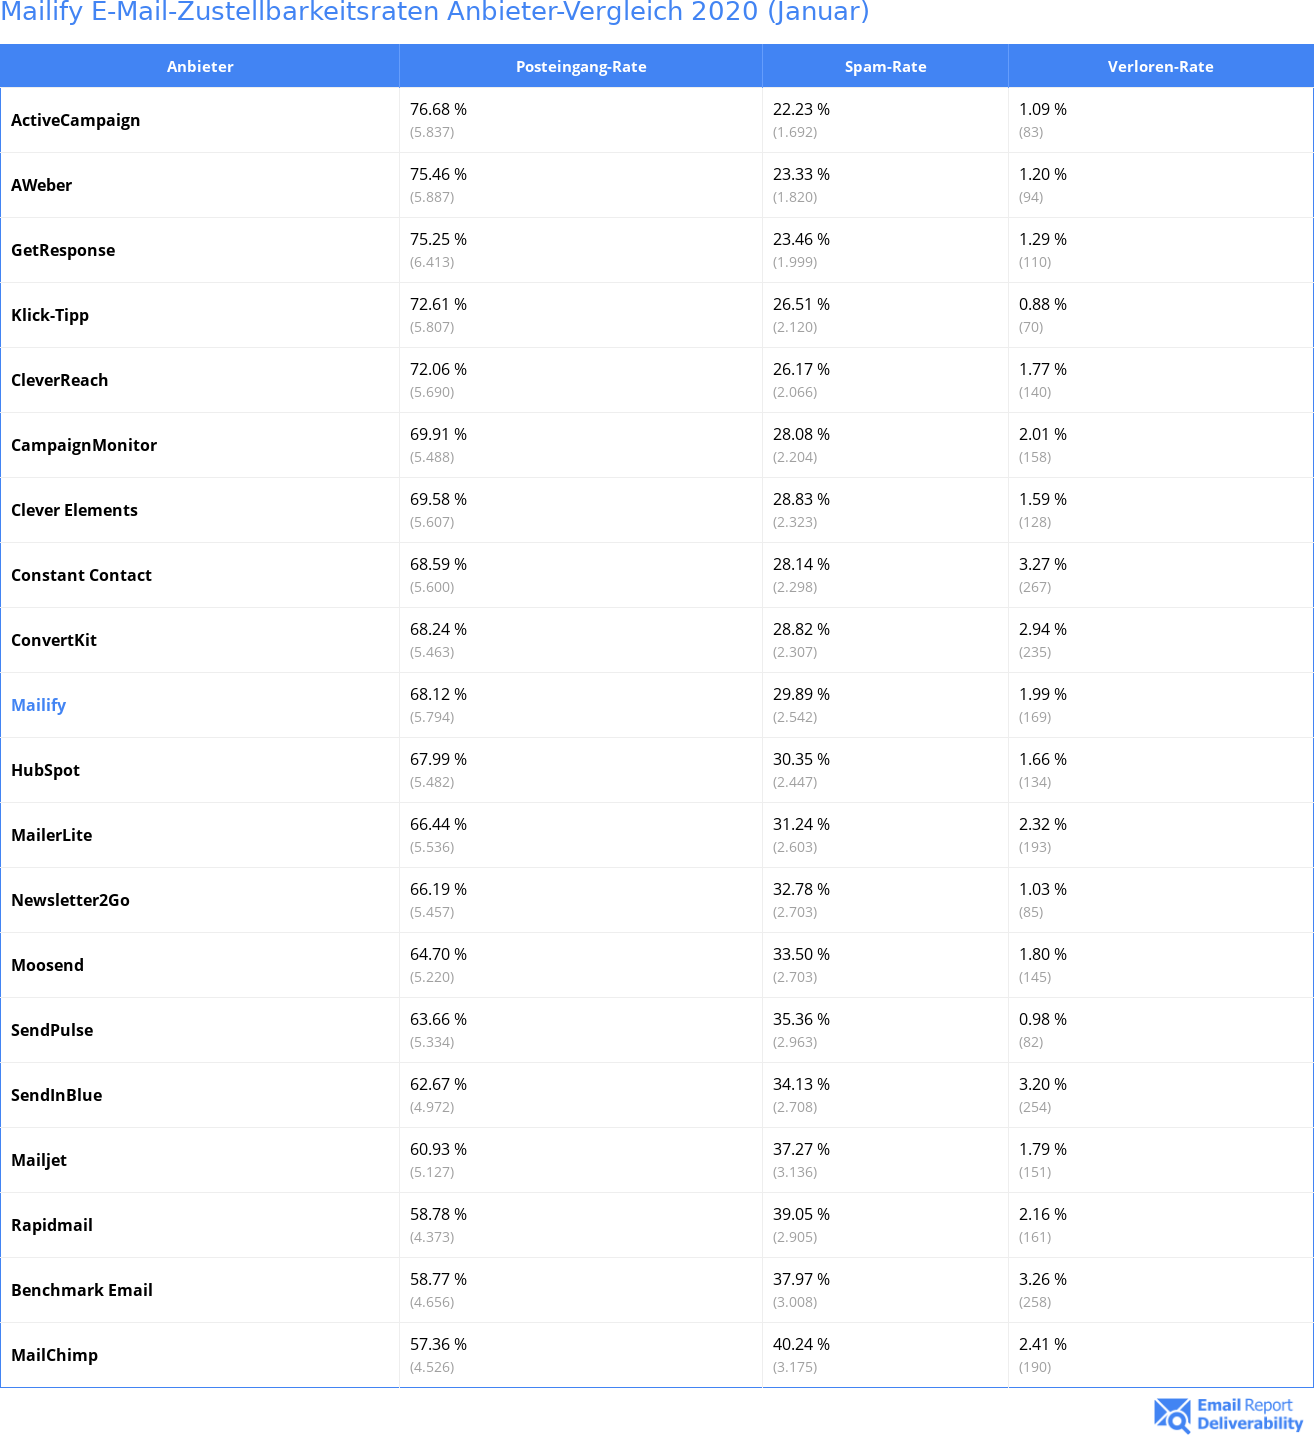 Mailify E-Mail-Zustellbarkeitsraten Anbieter-Vergleich 2020 (Januar)